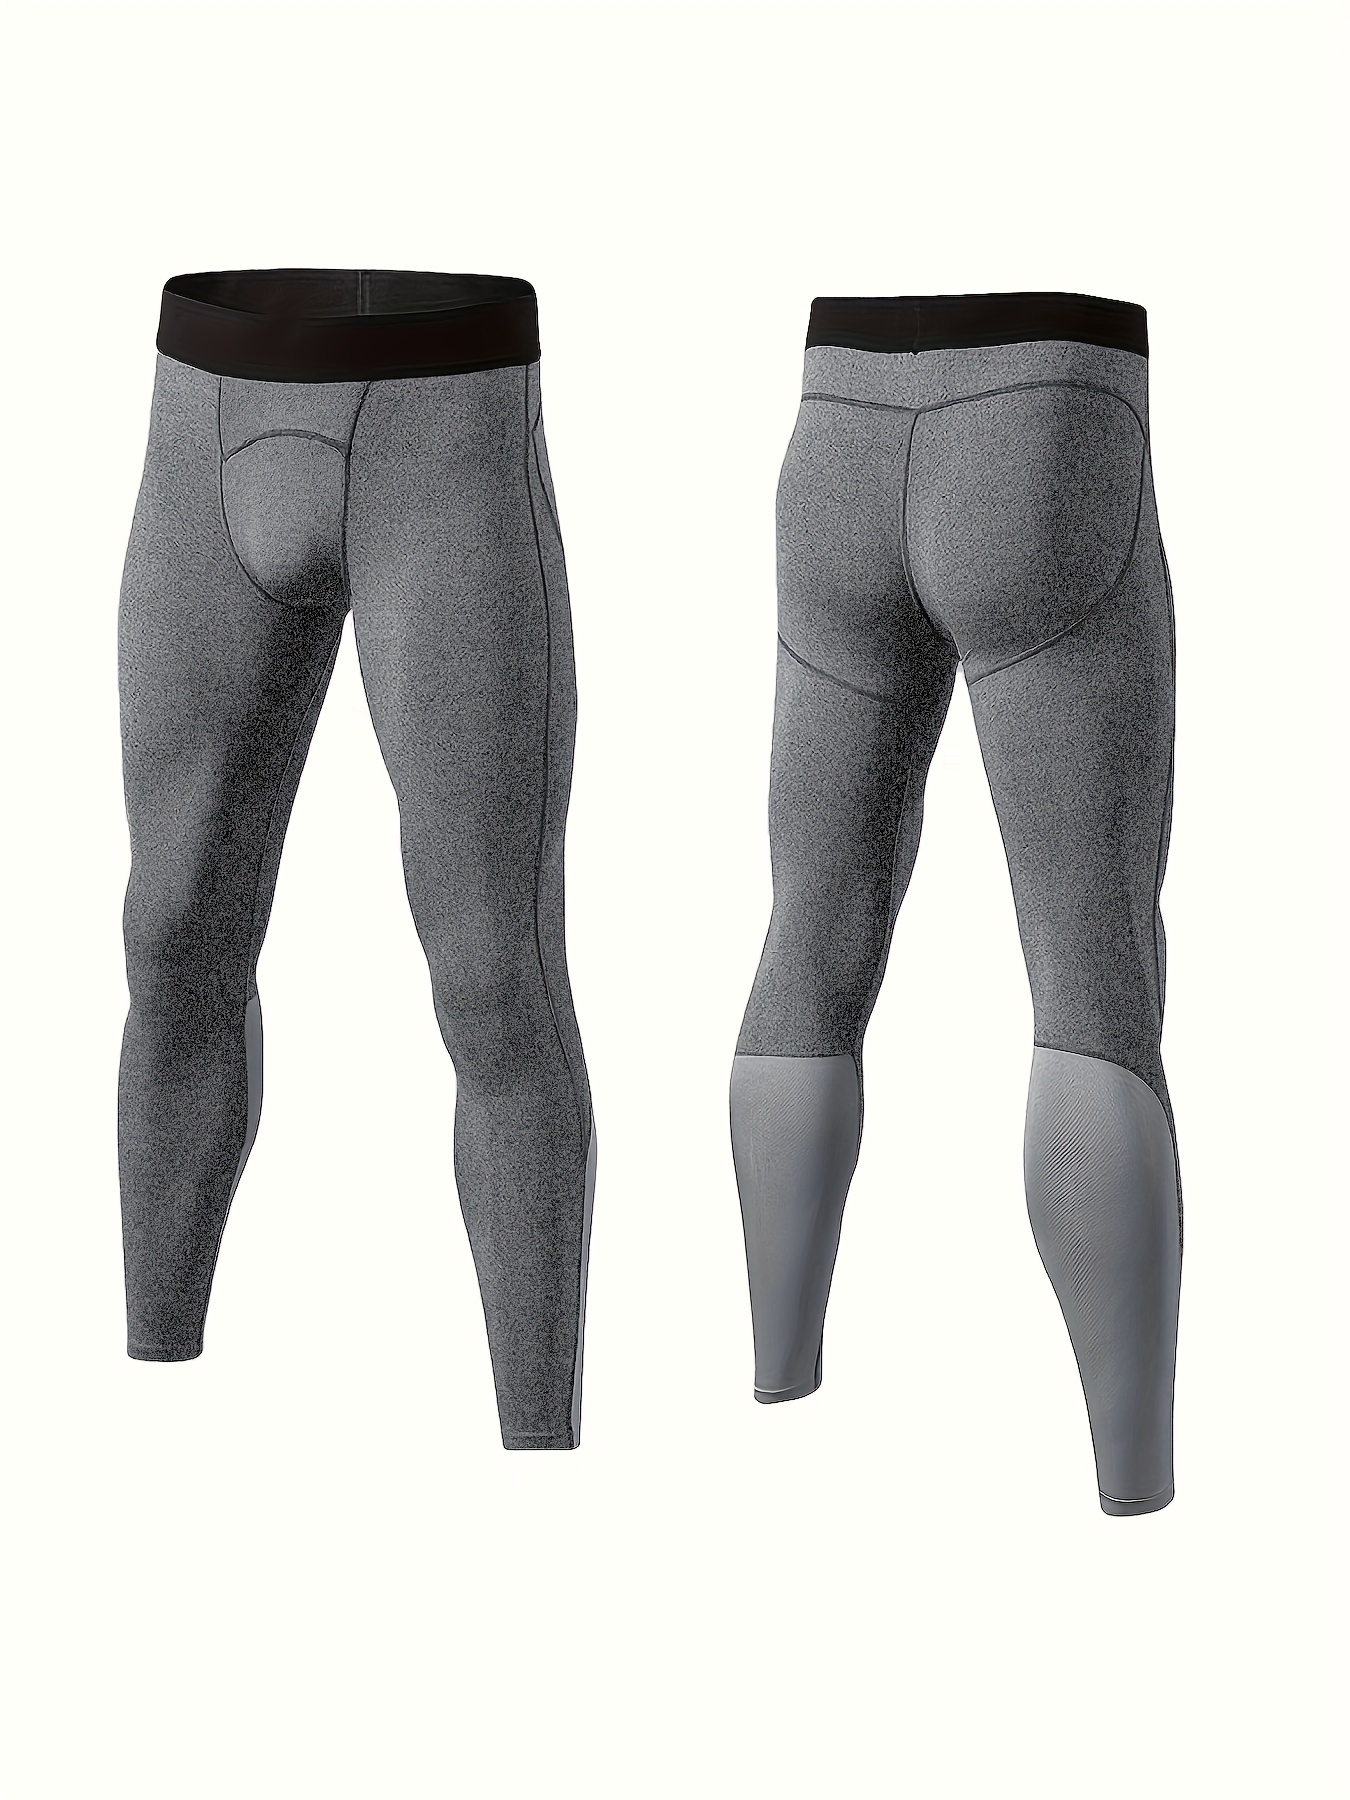 Compression Leggings for Sport, Men, Black/Grey